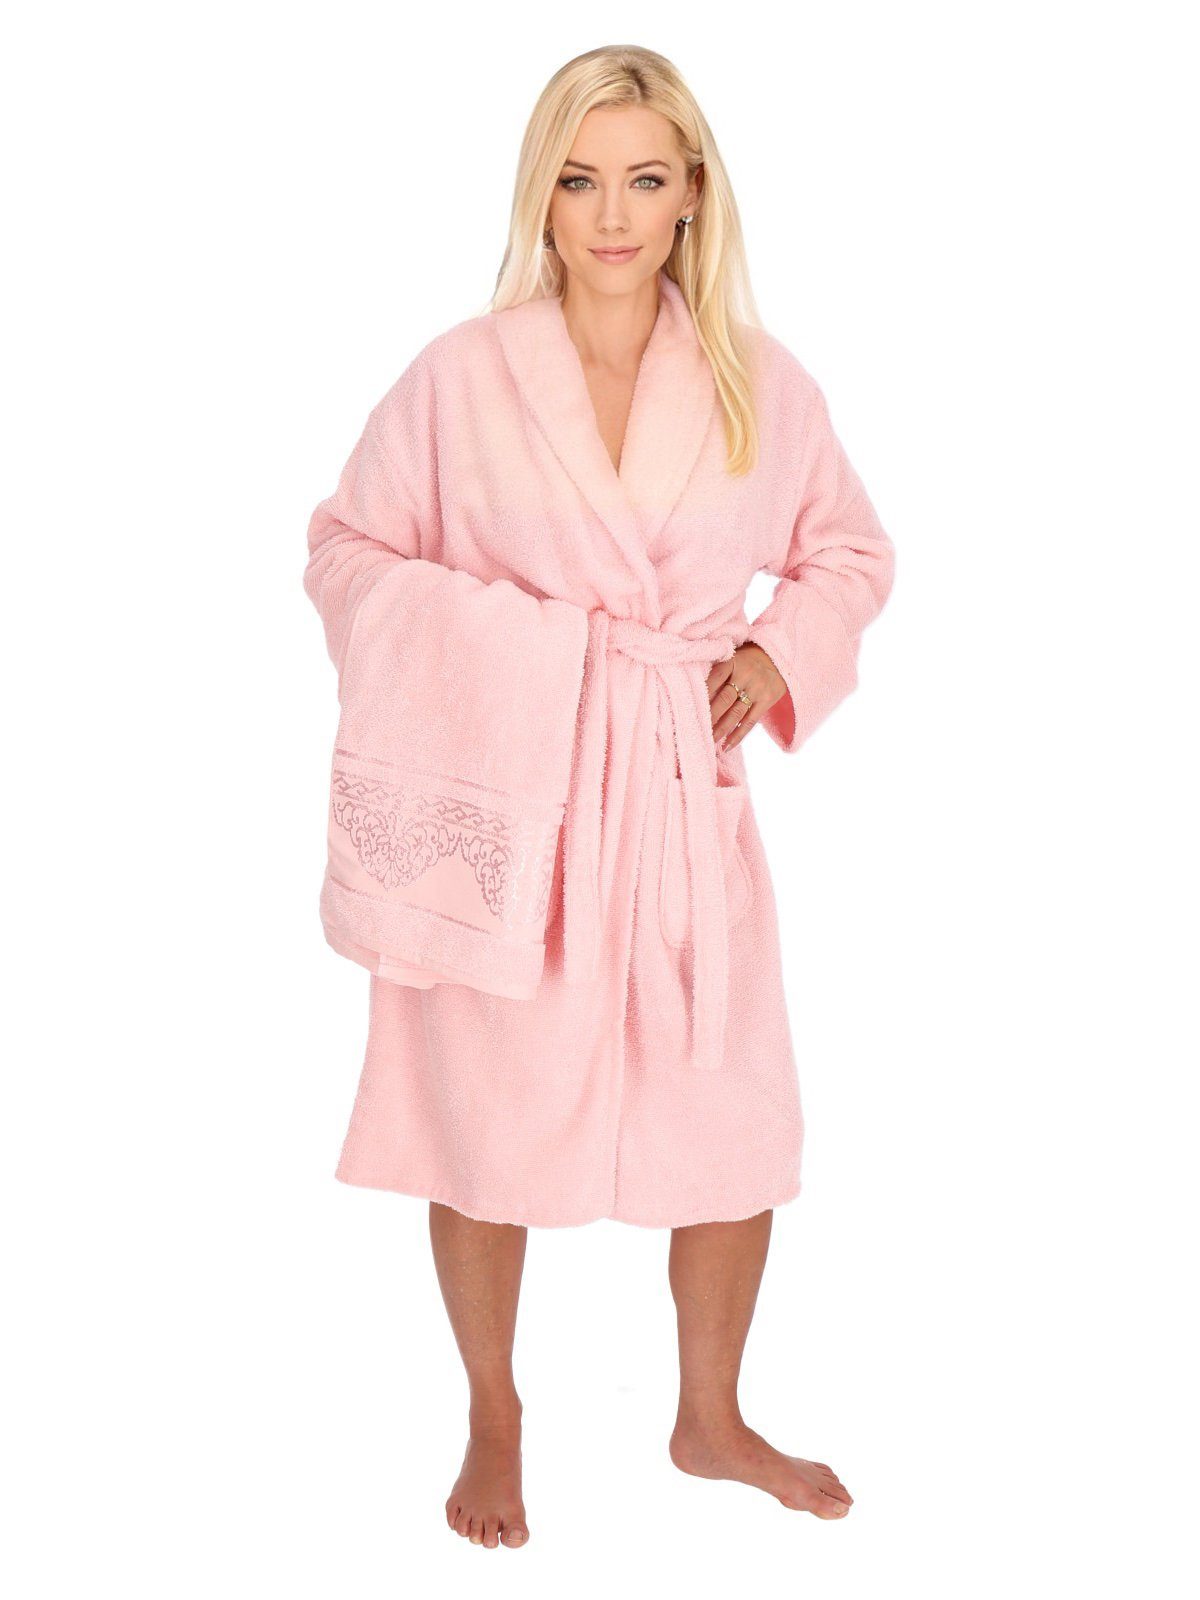 ZELLERFELD Damenbademantel 2-teilig Bademantelset Damen 100% Baumwolle  Einheitsgröße mit Handtuch 2 Taschen Gürtel Cotton Sauna